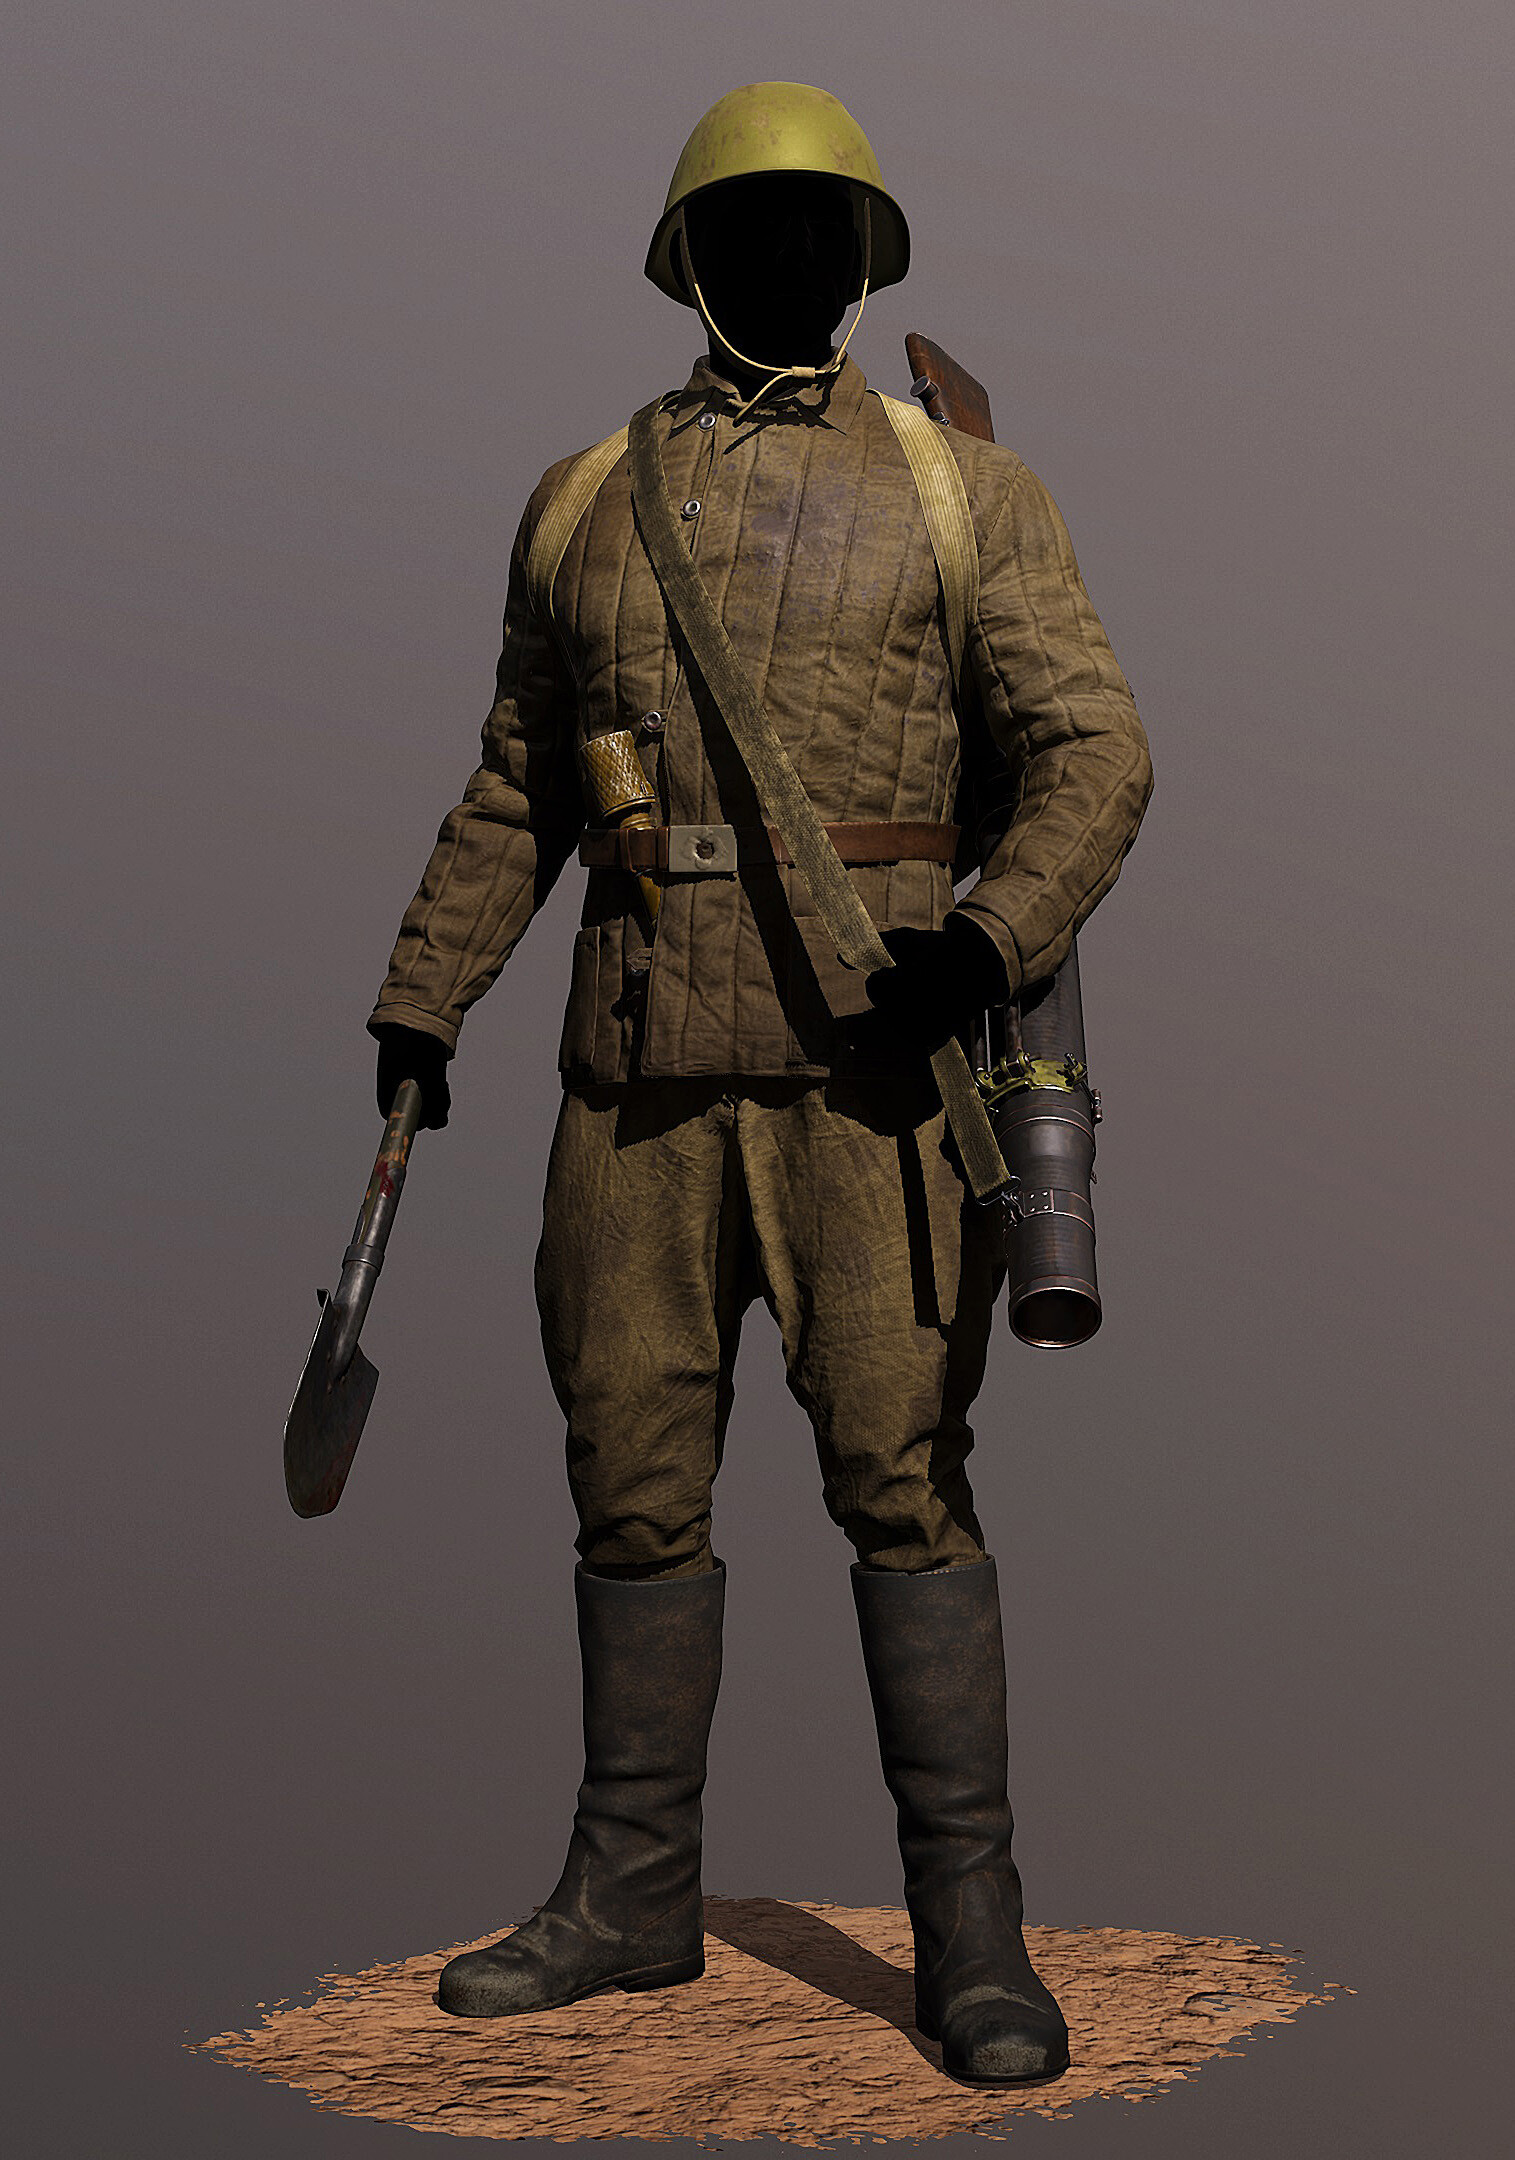 ArtStation - Soviet soldier